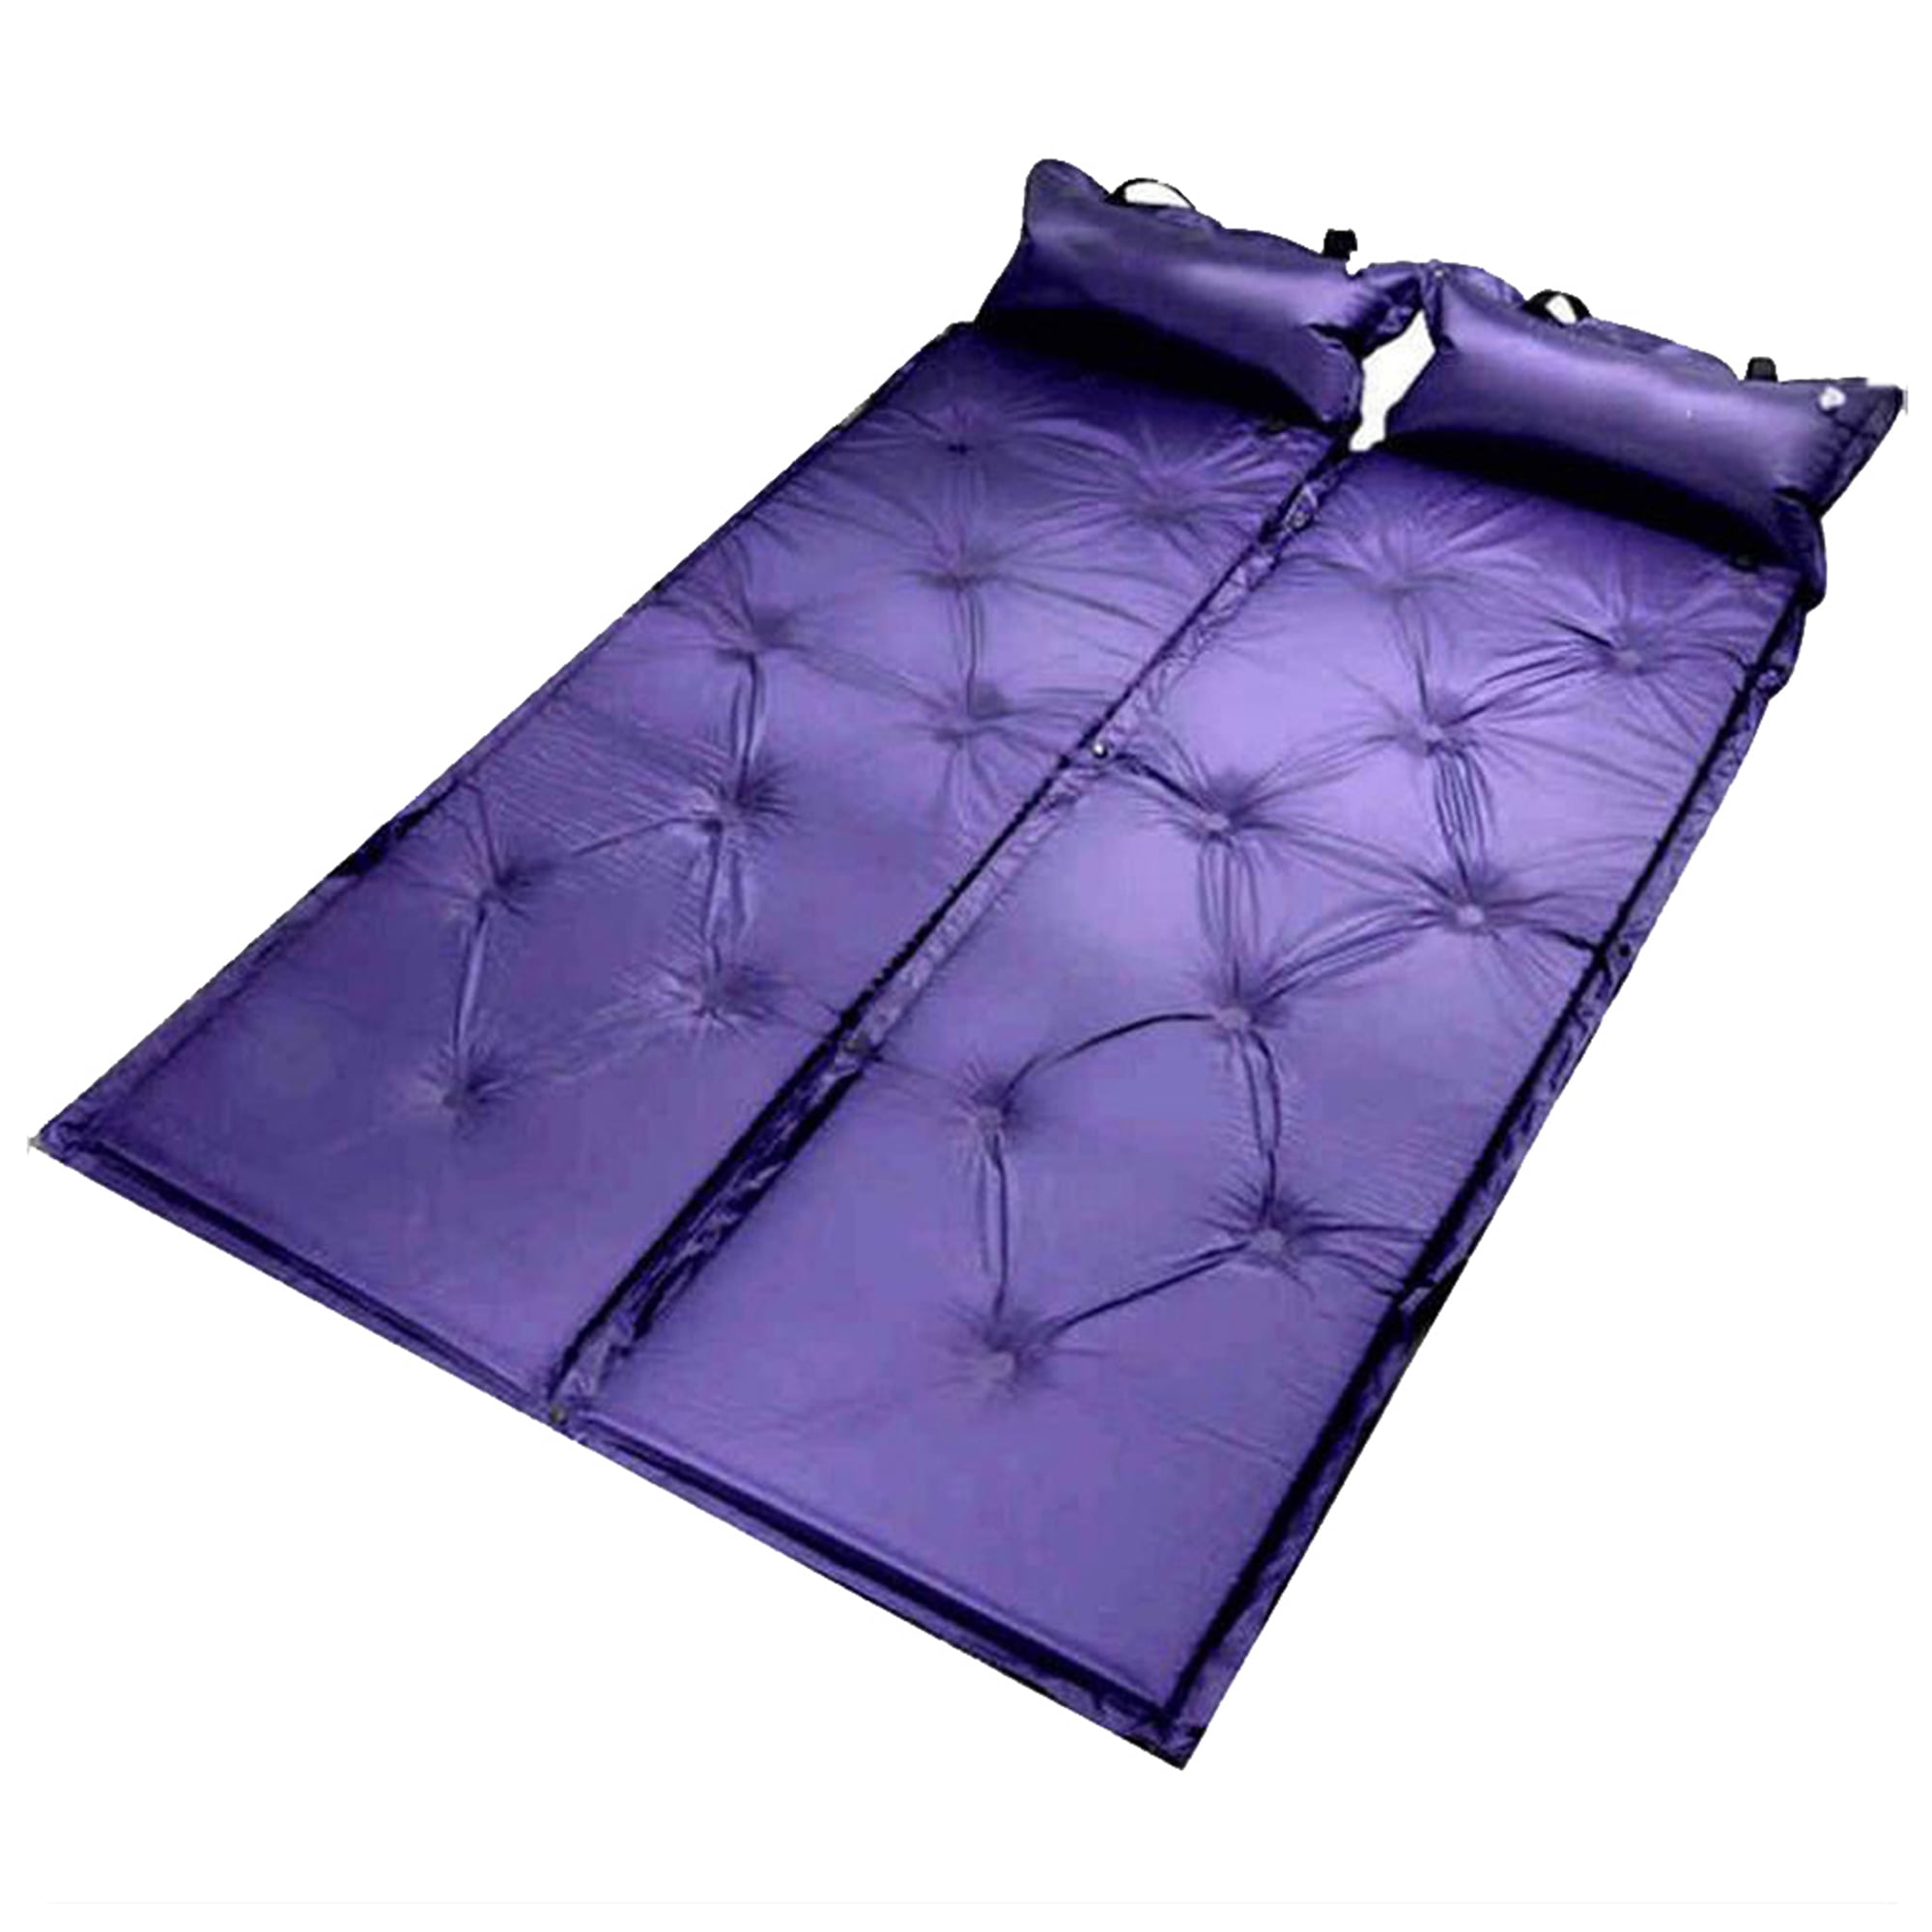 Single Self Inflating Pad Sleeping Mattress Mat Air Bed Camping Hiking Outdoor 